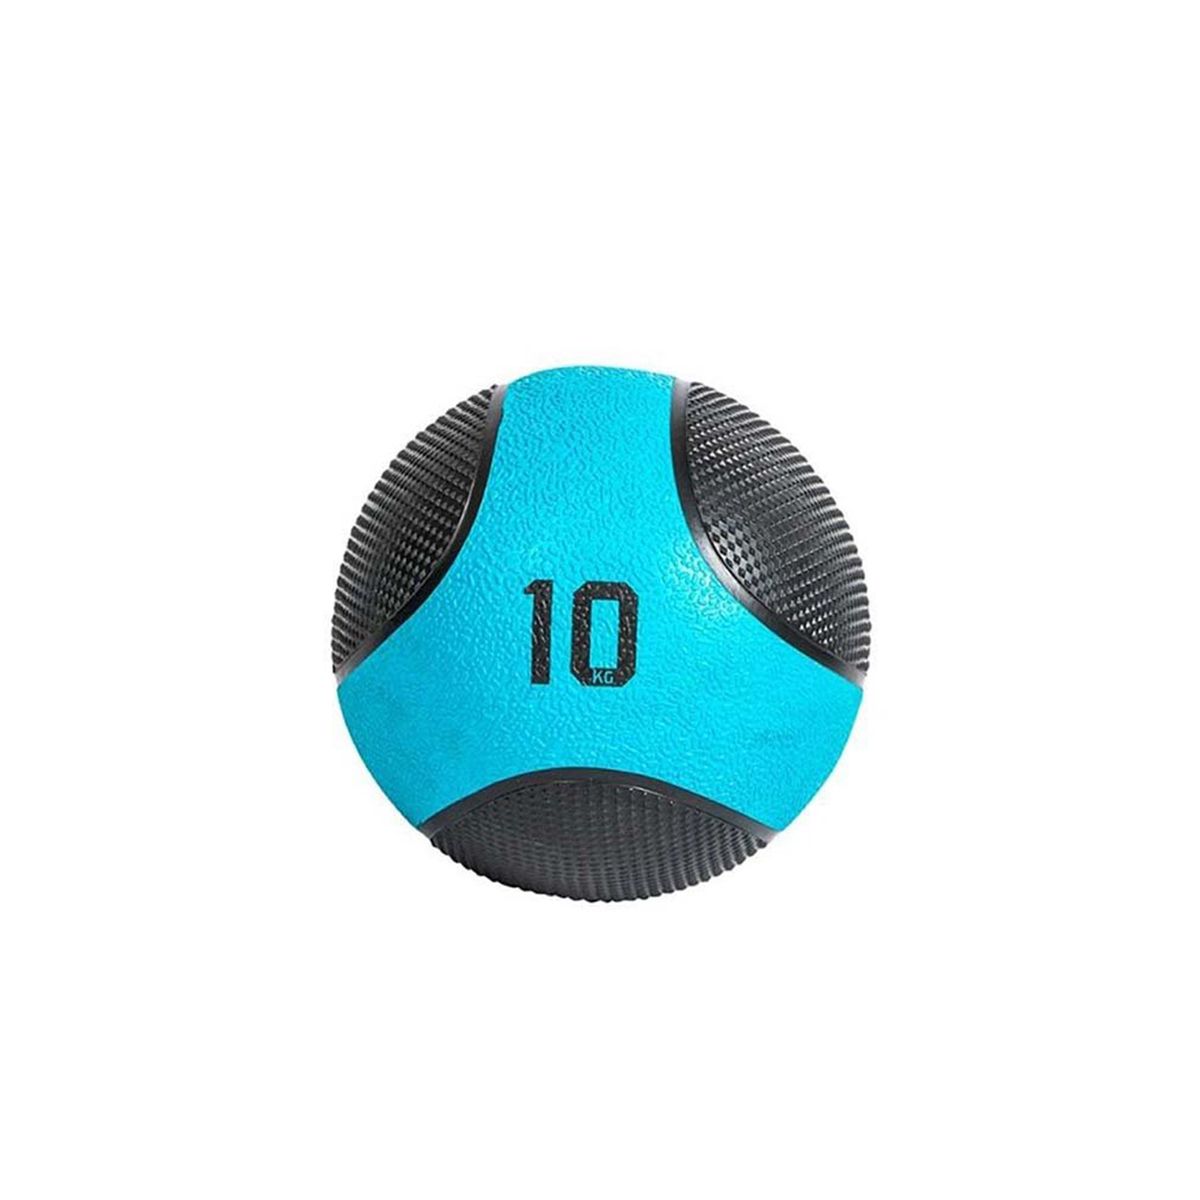 LIVEPRO - SOLID MEDICINE BALL - 10 KG